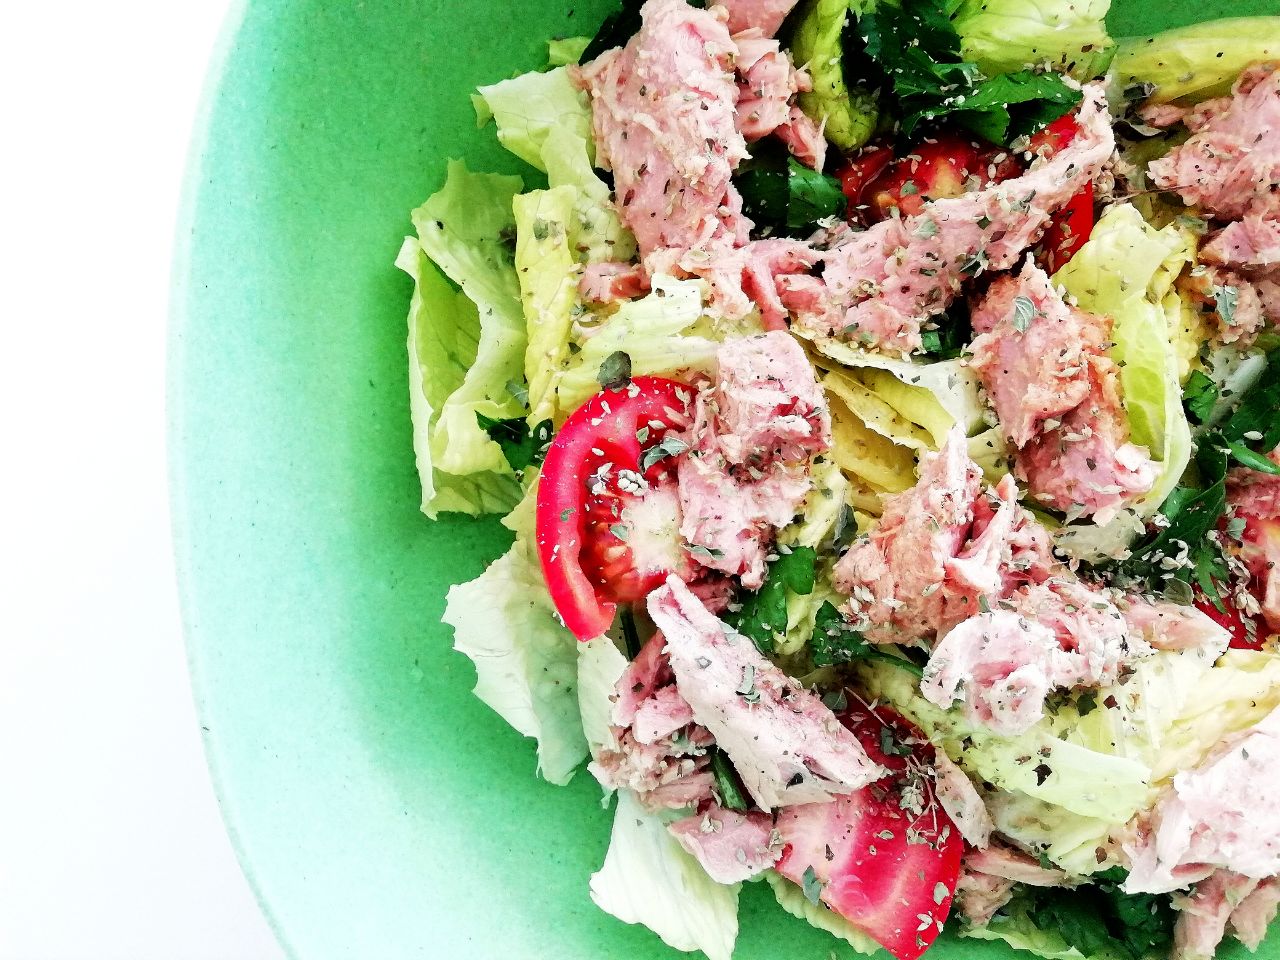 Ricette light e semplici: insalata di lattuga con prezzemolo pomodori e filetti di tonno!